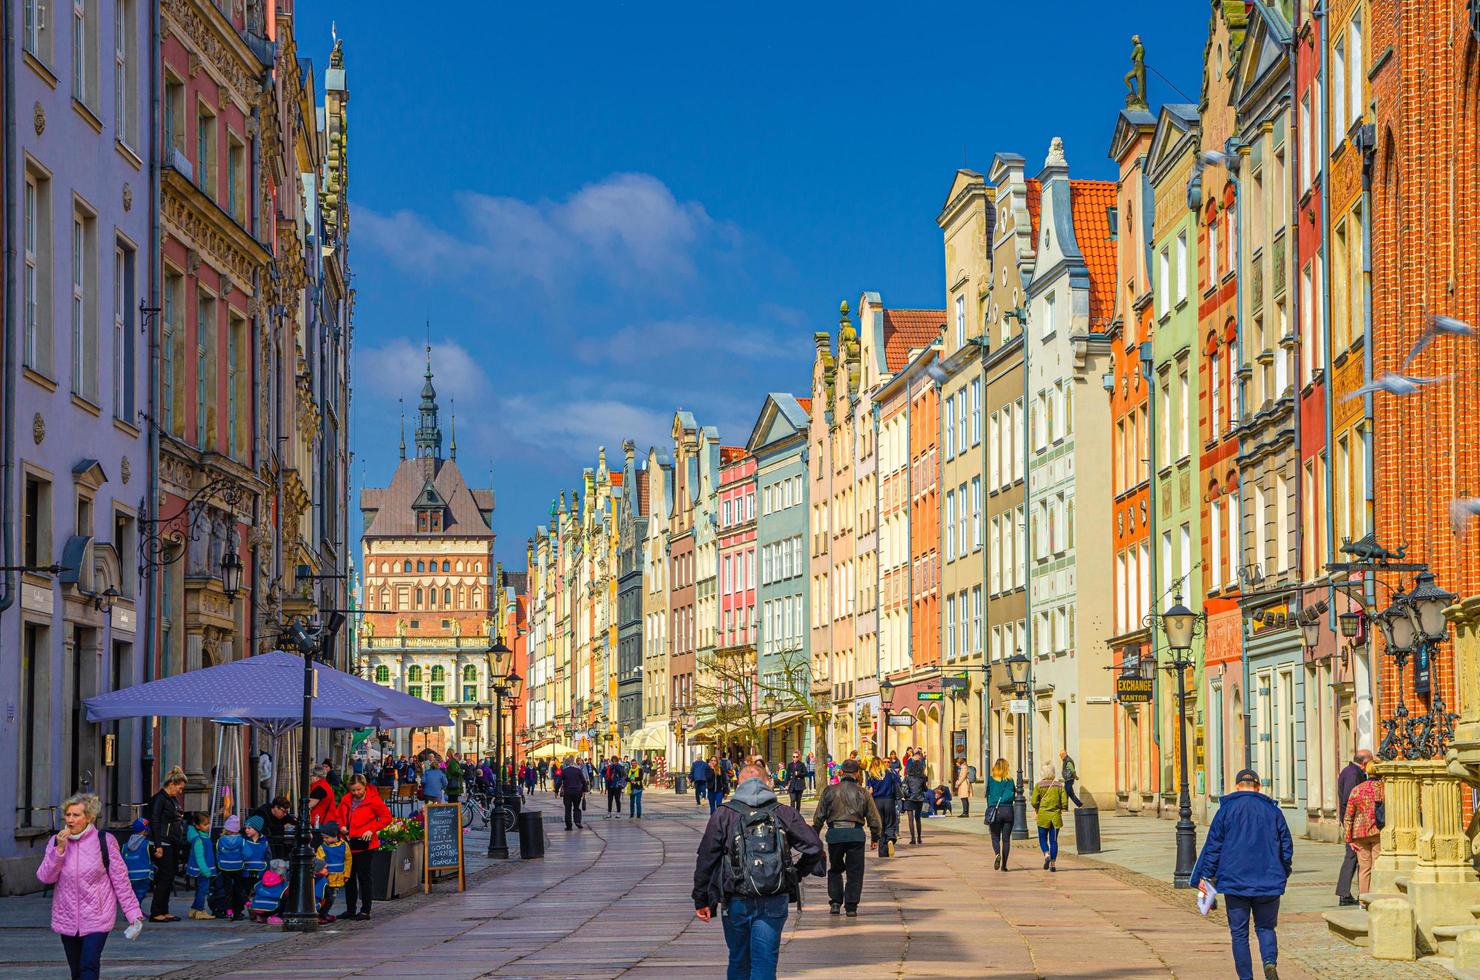 gdansk, pologne, 17 avril 2018 porte dorée zlota brama, tour de la prison, maisons colorées typiques bâtiments et touristes marchant dans la rue dluga à wroclaw photo